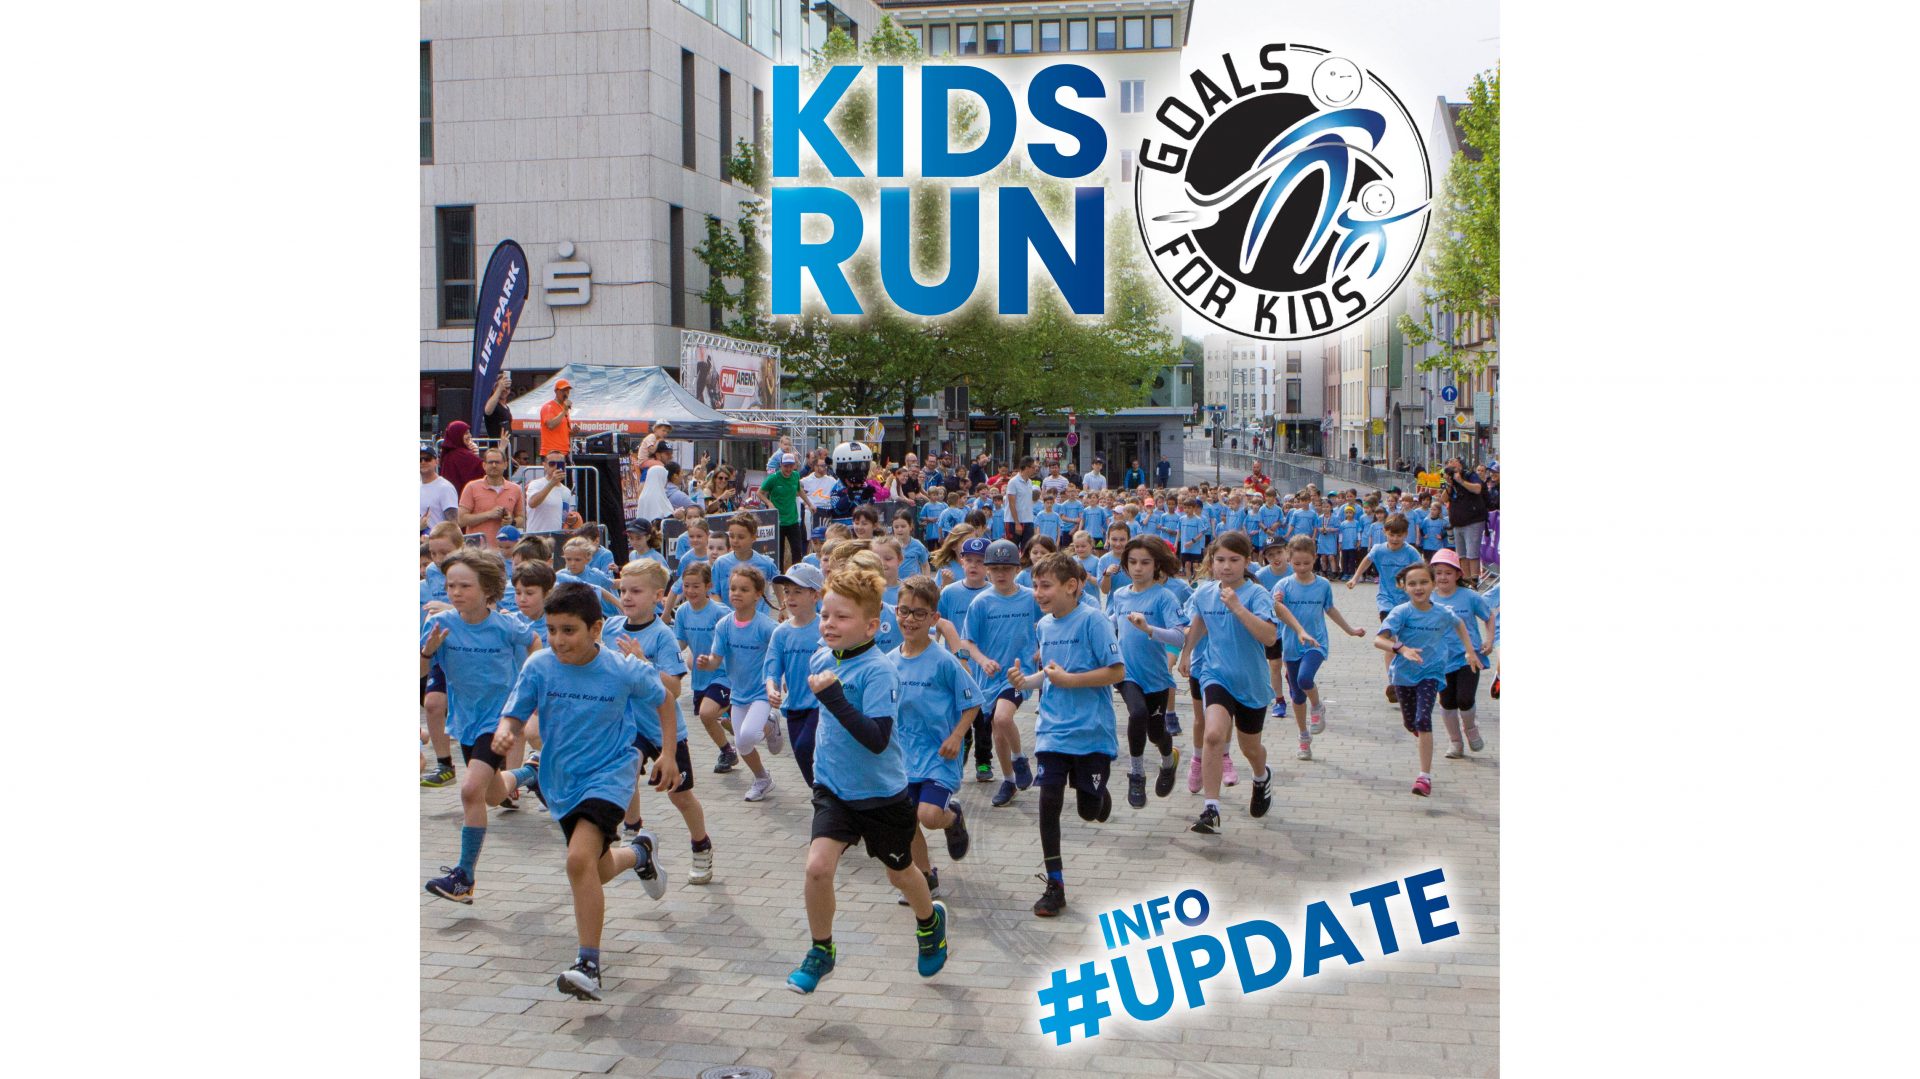 Goals for Kids RUN – Info Update